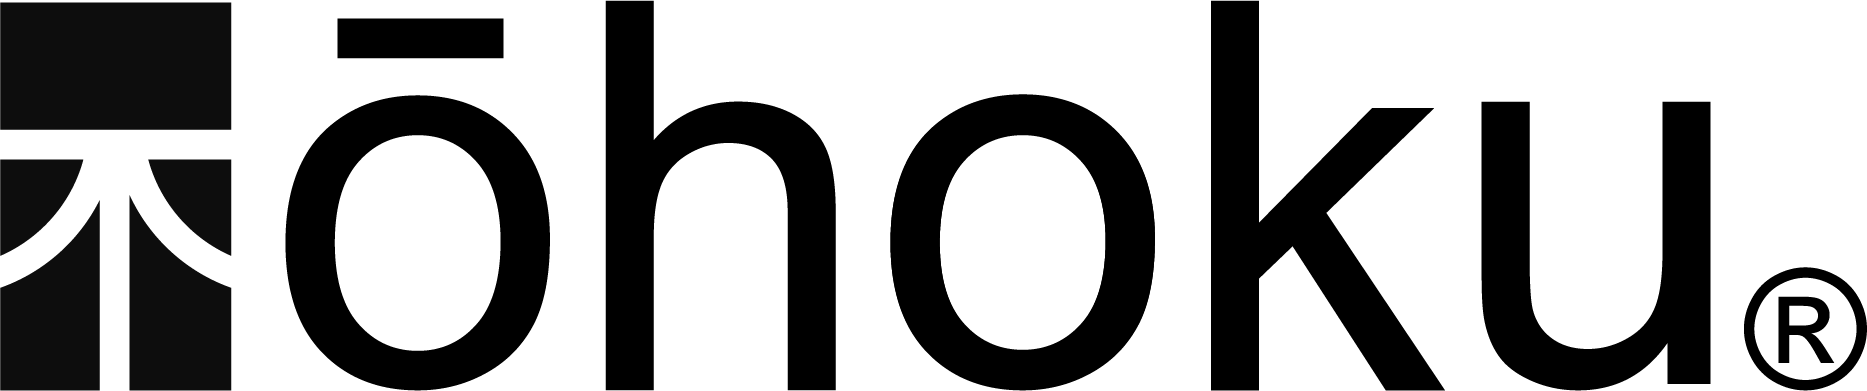 Ohoku Logo Black